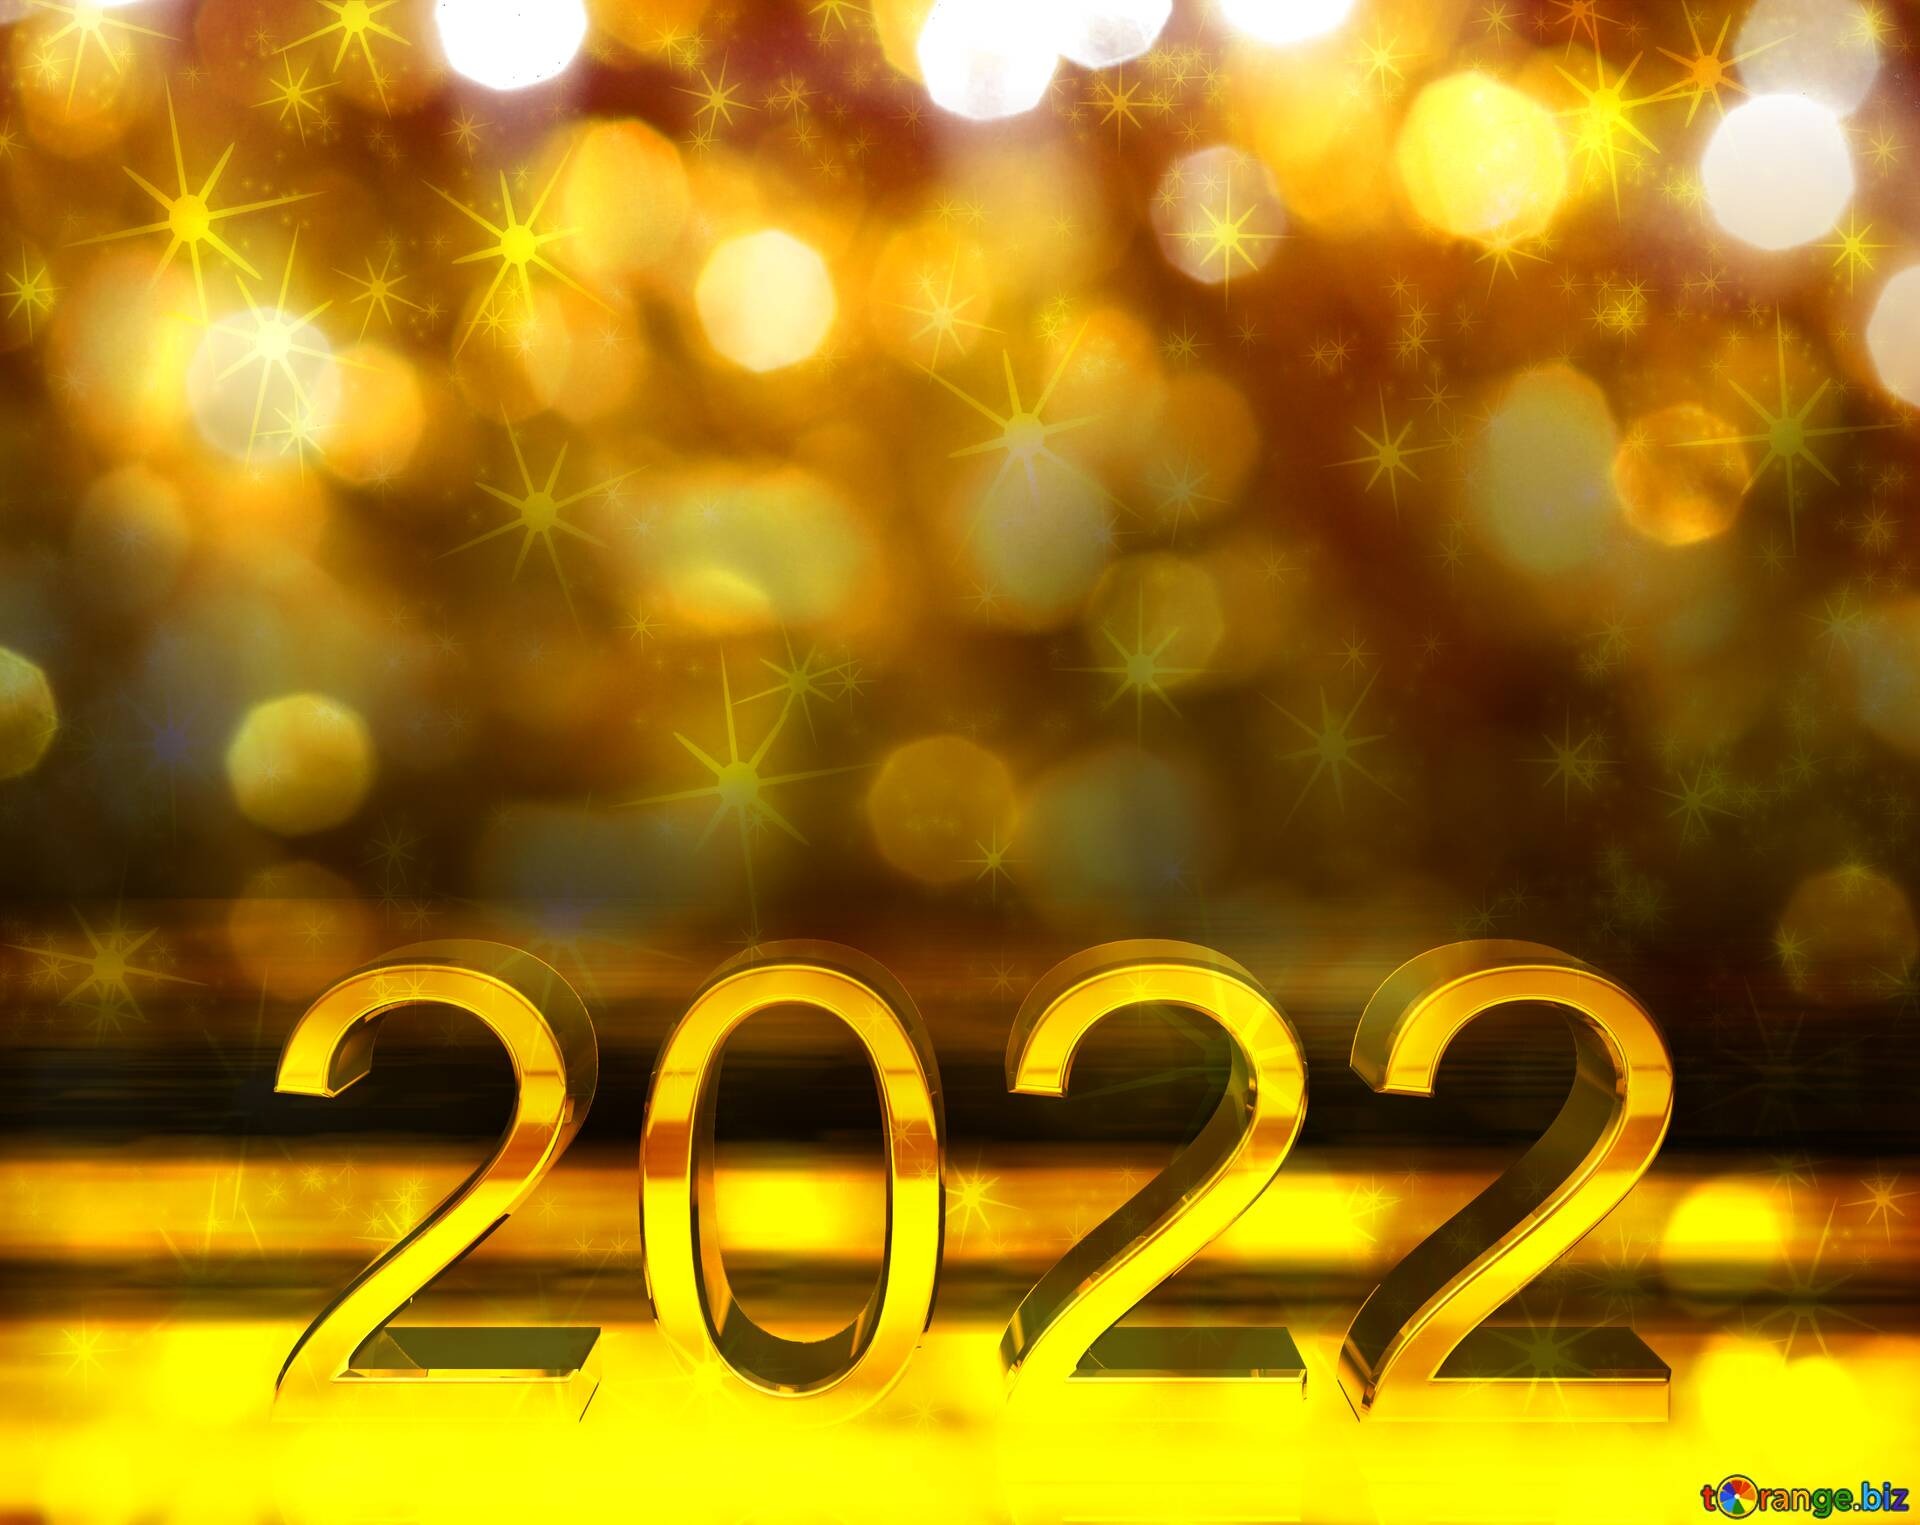 Поздравление с новым годом 2022 нужно отправить друзьям и родным